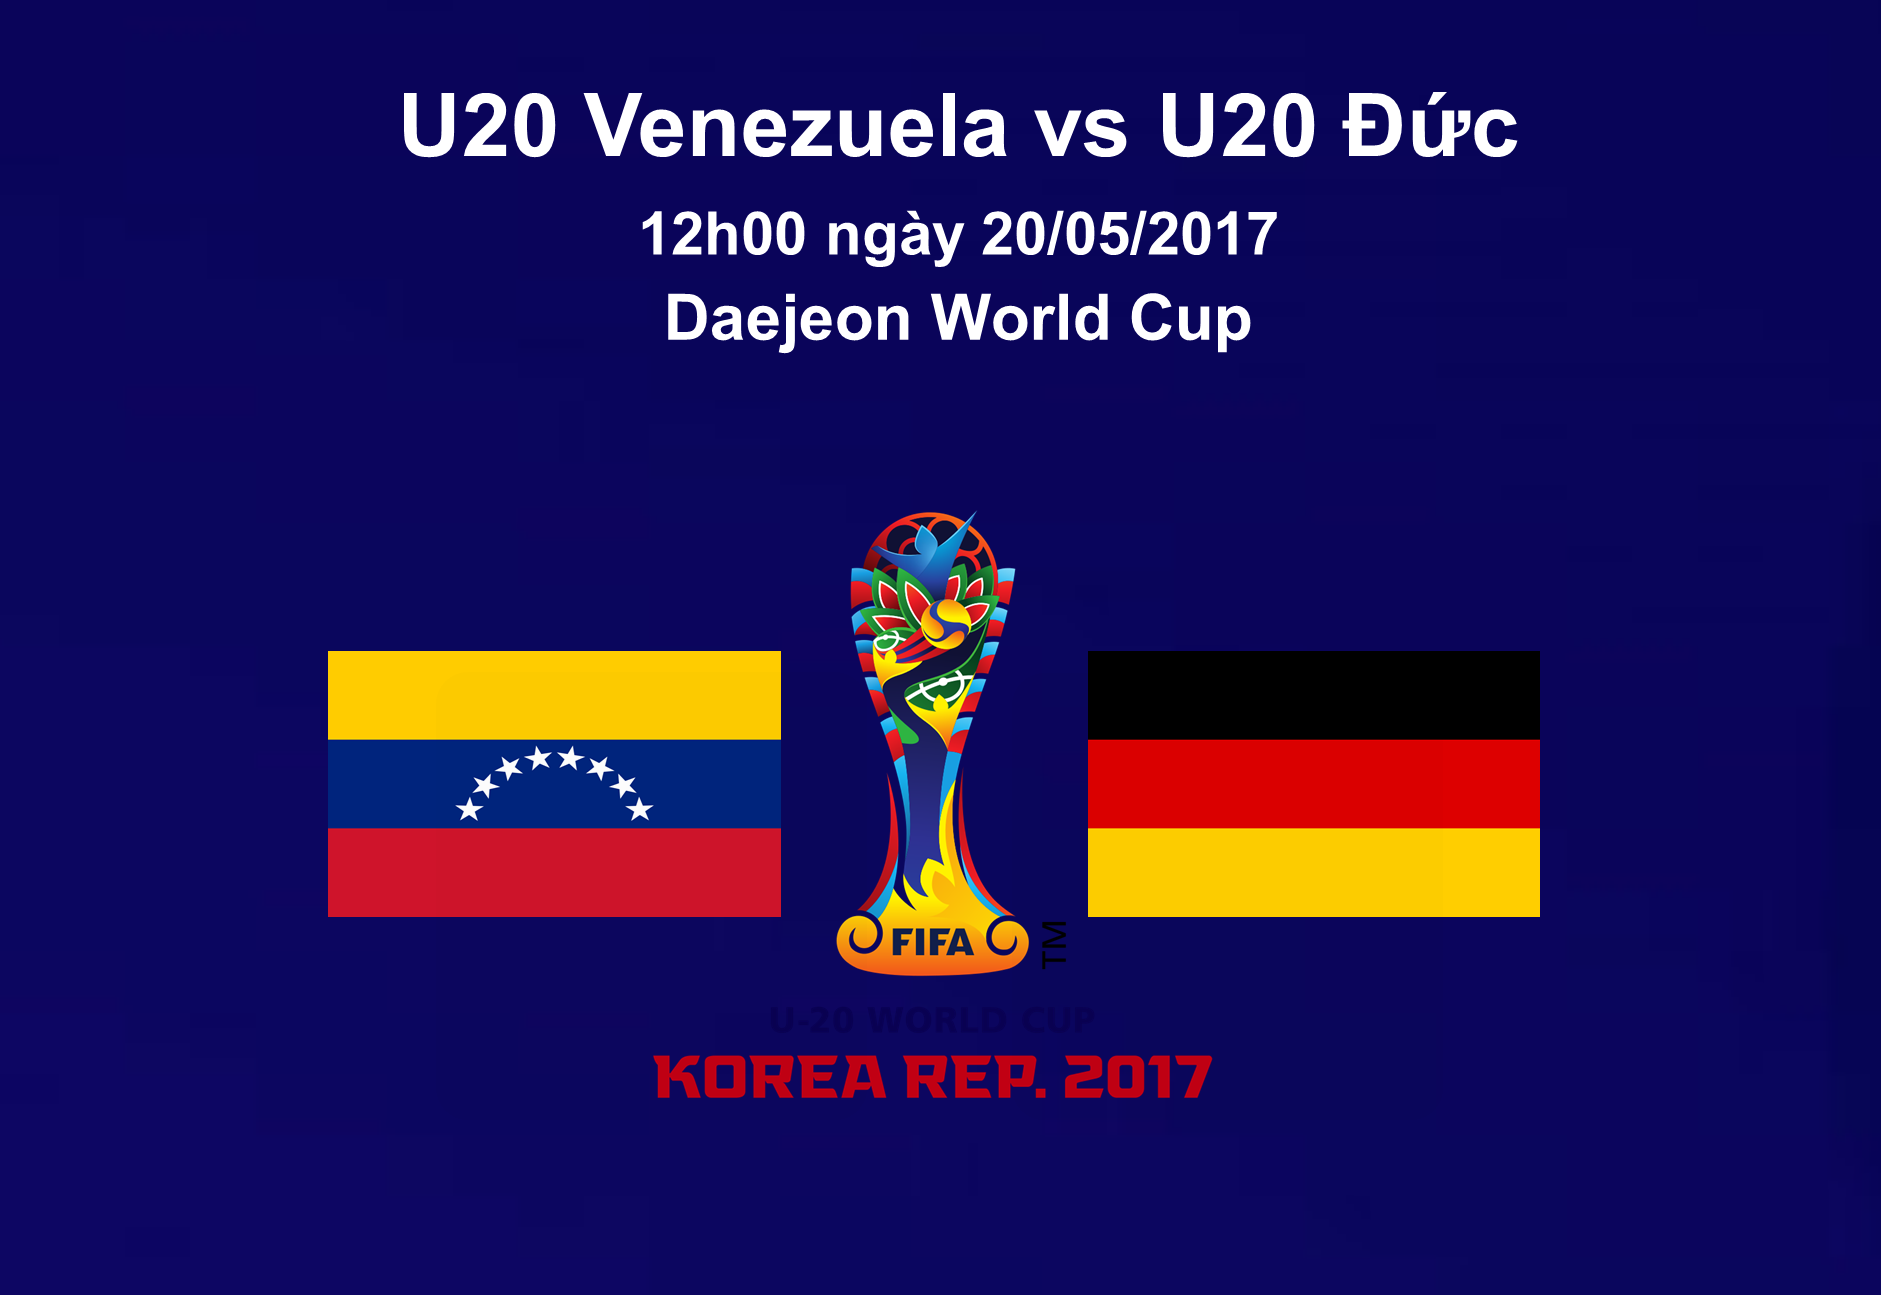 link xem U20 Venezuela vs U20 Đức, link xem u20 world cup venezuela vs duc, link xem truc tiep u20 venezuela vs u20duc